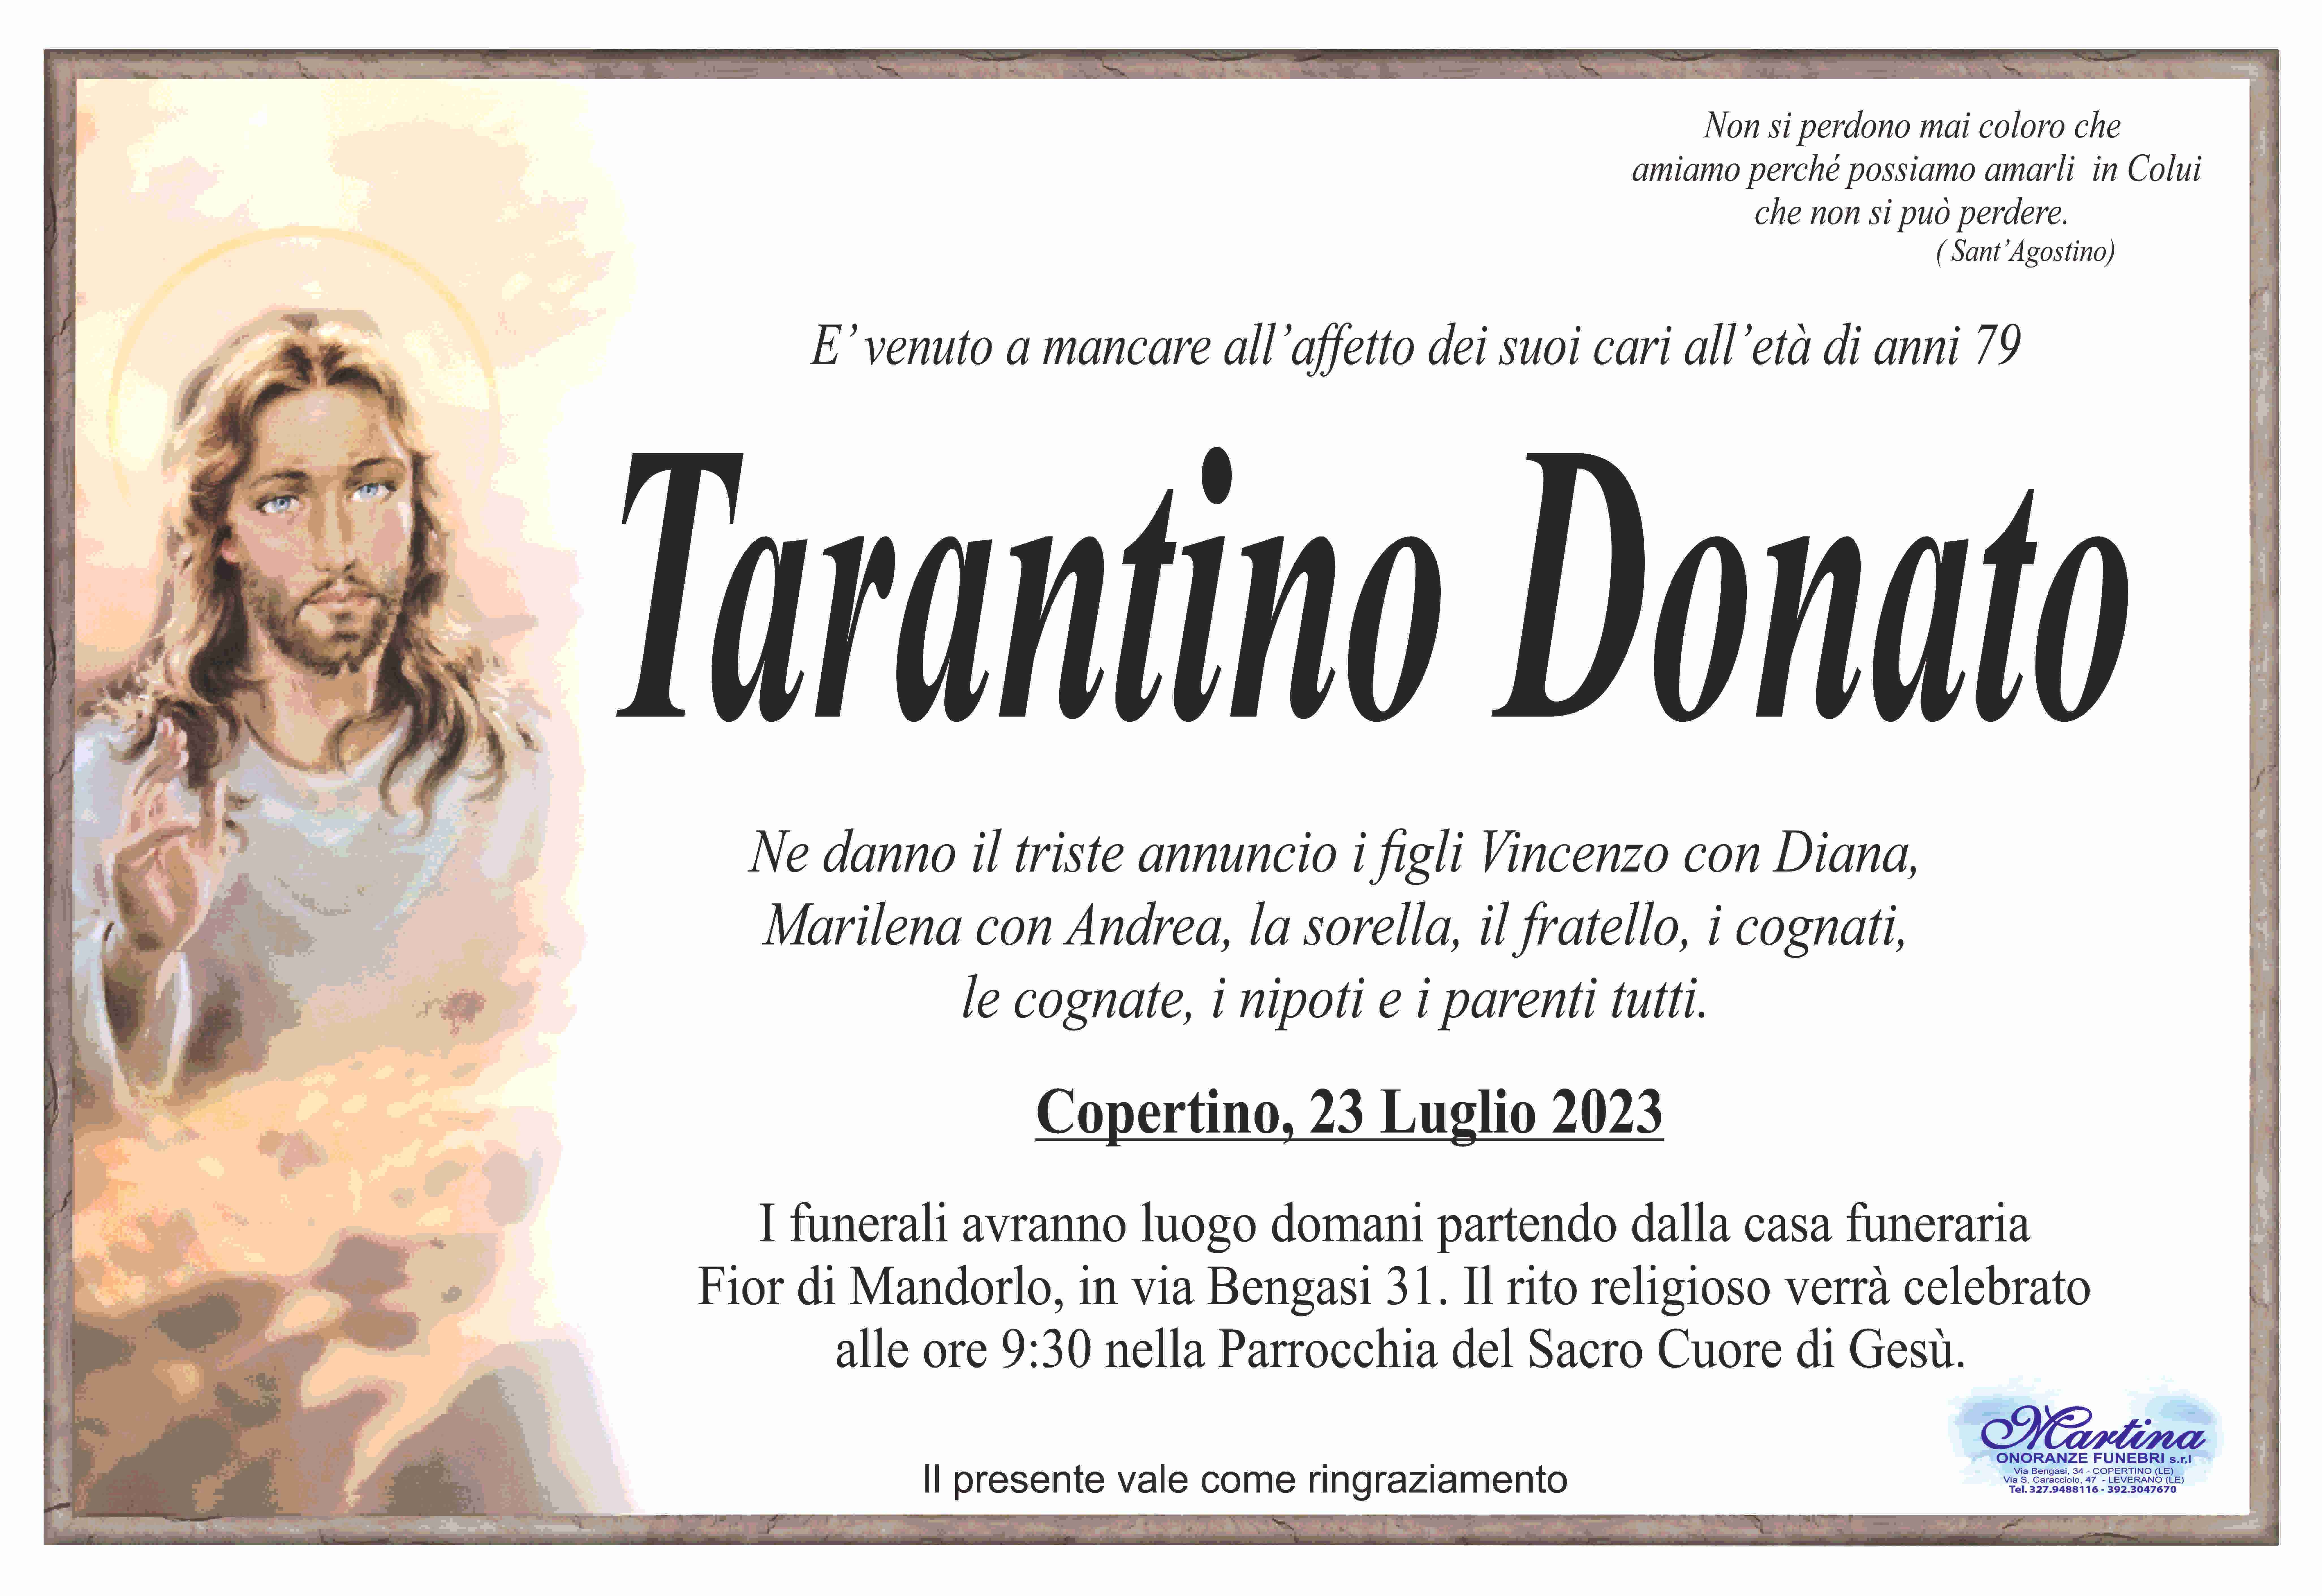 Donato Tarantino